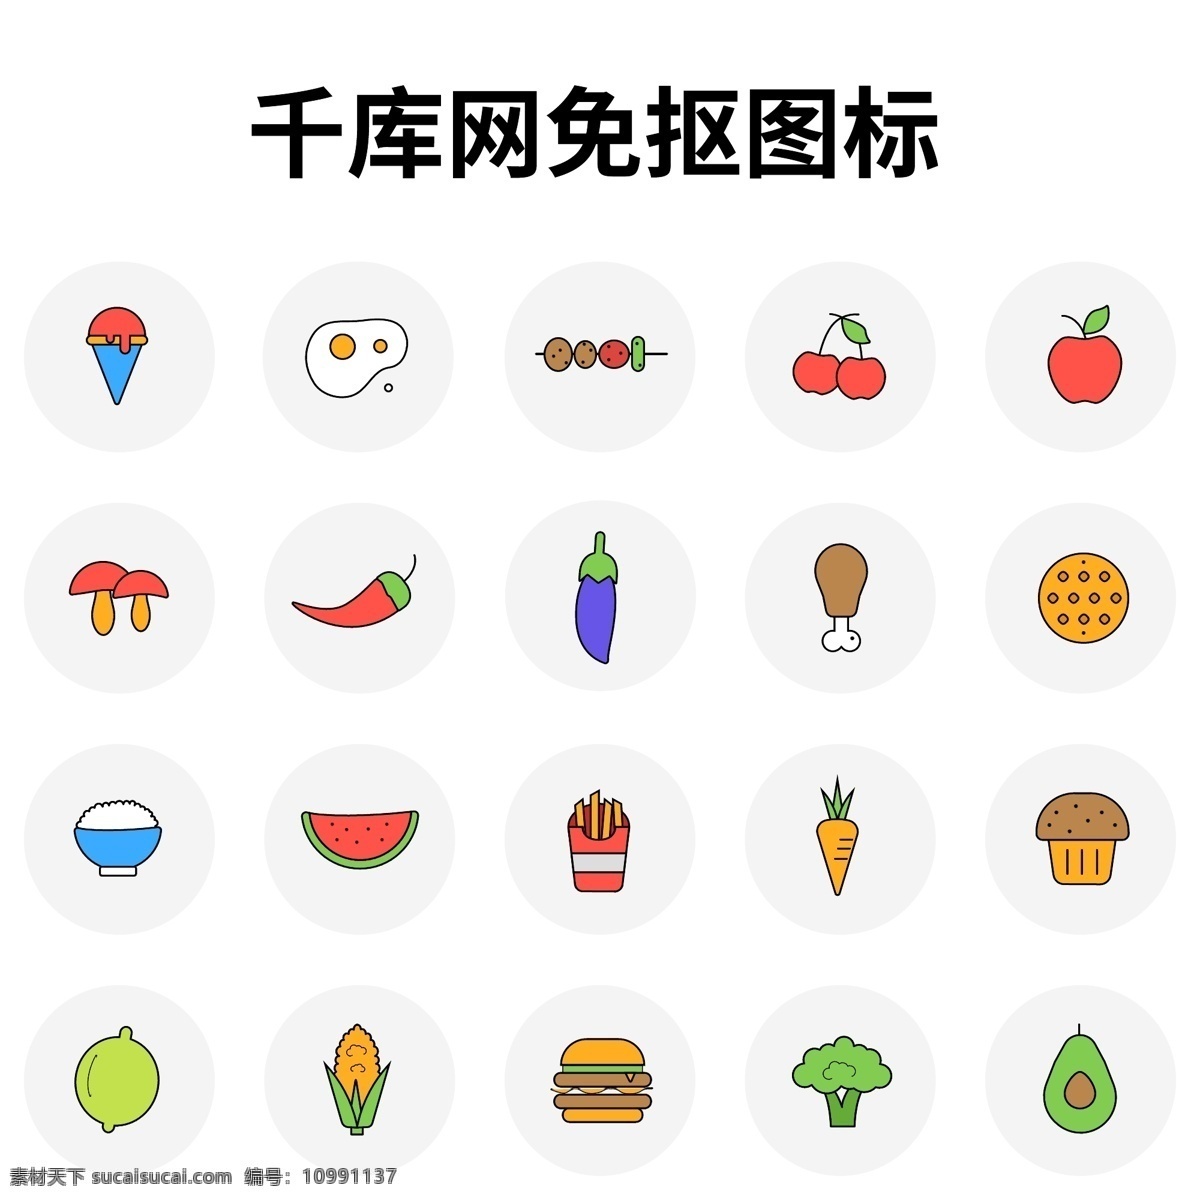 水果 蔬菜 食 物类 图标 汇总 食物 icon 煎蛋 串串 苹果 辣椒 冰激凌 西瓜 米饭 薯条 汉堡包